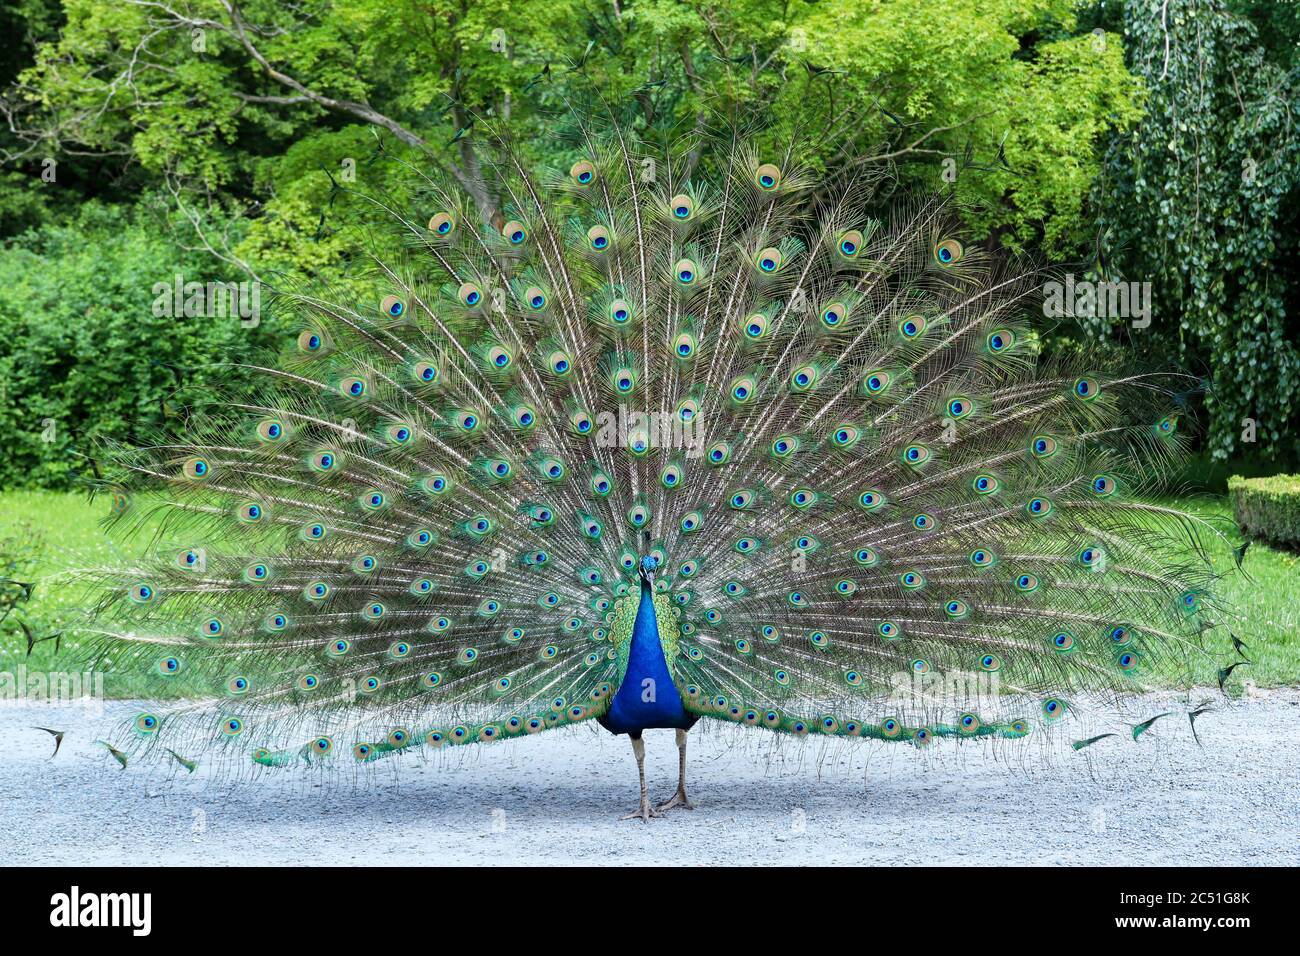 Peacock mostra la sua lunga coda con belle piume con segni simili agli occhi Foto Stock